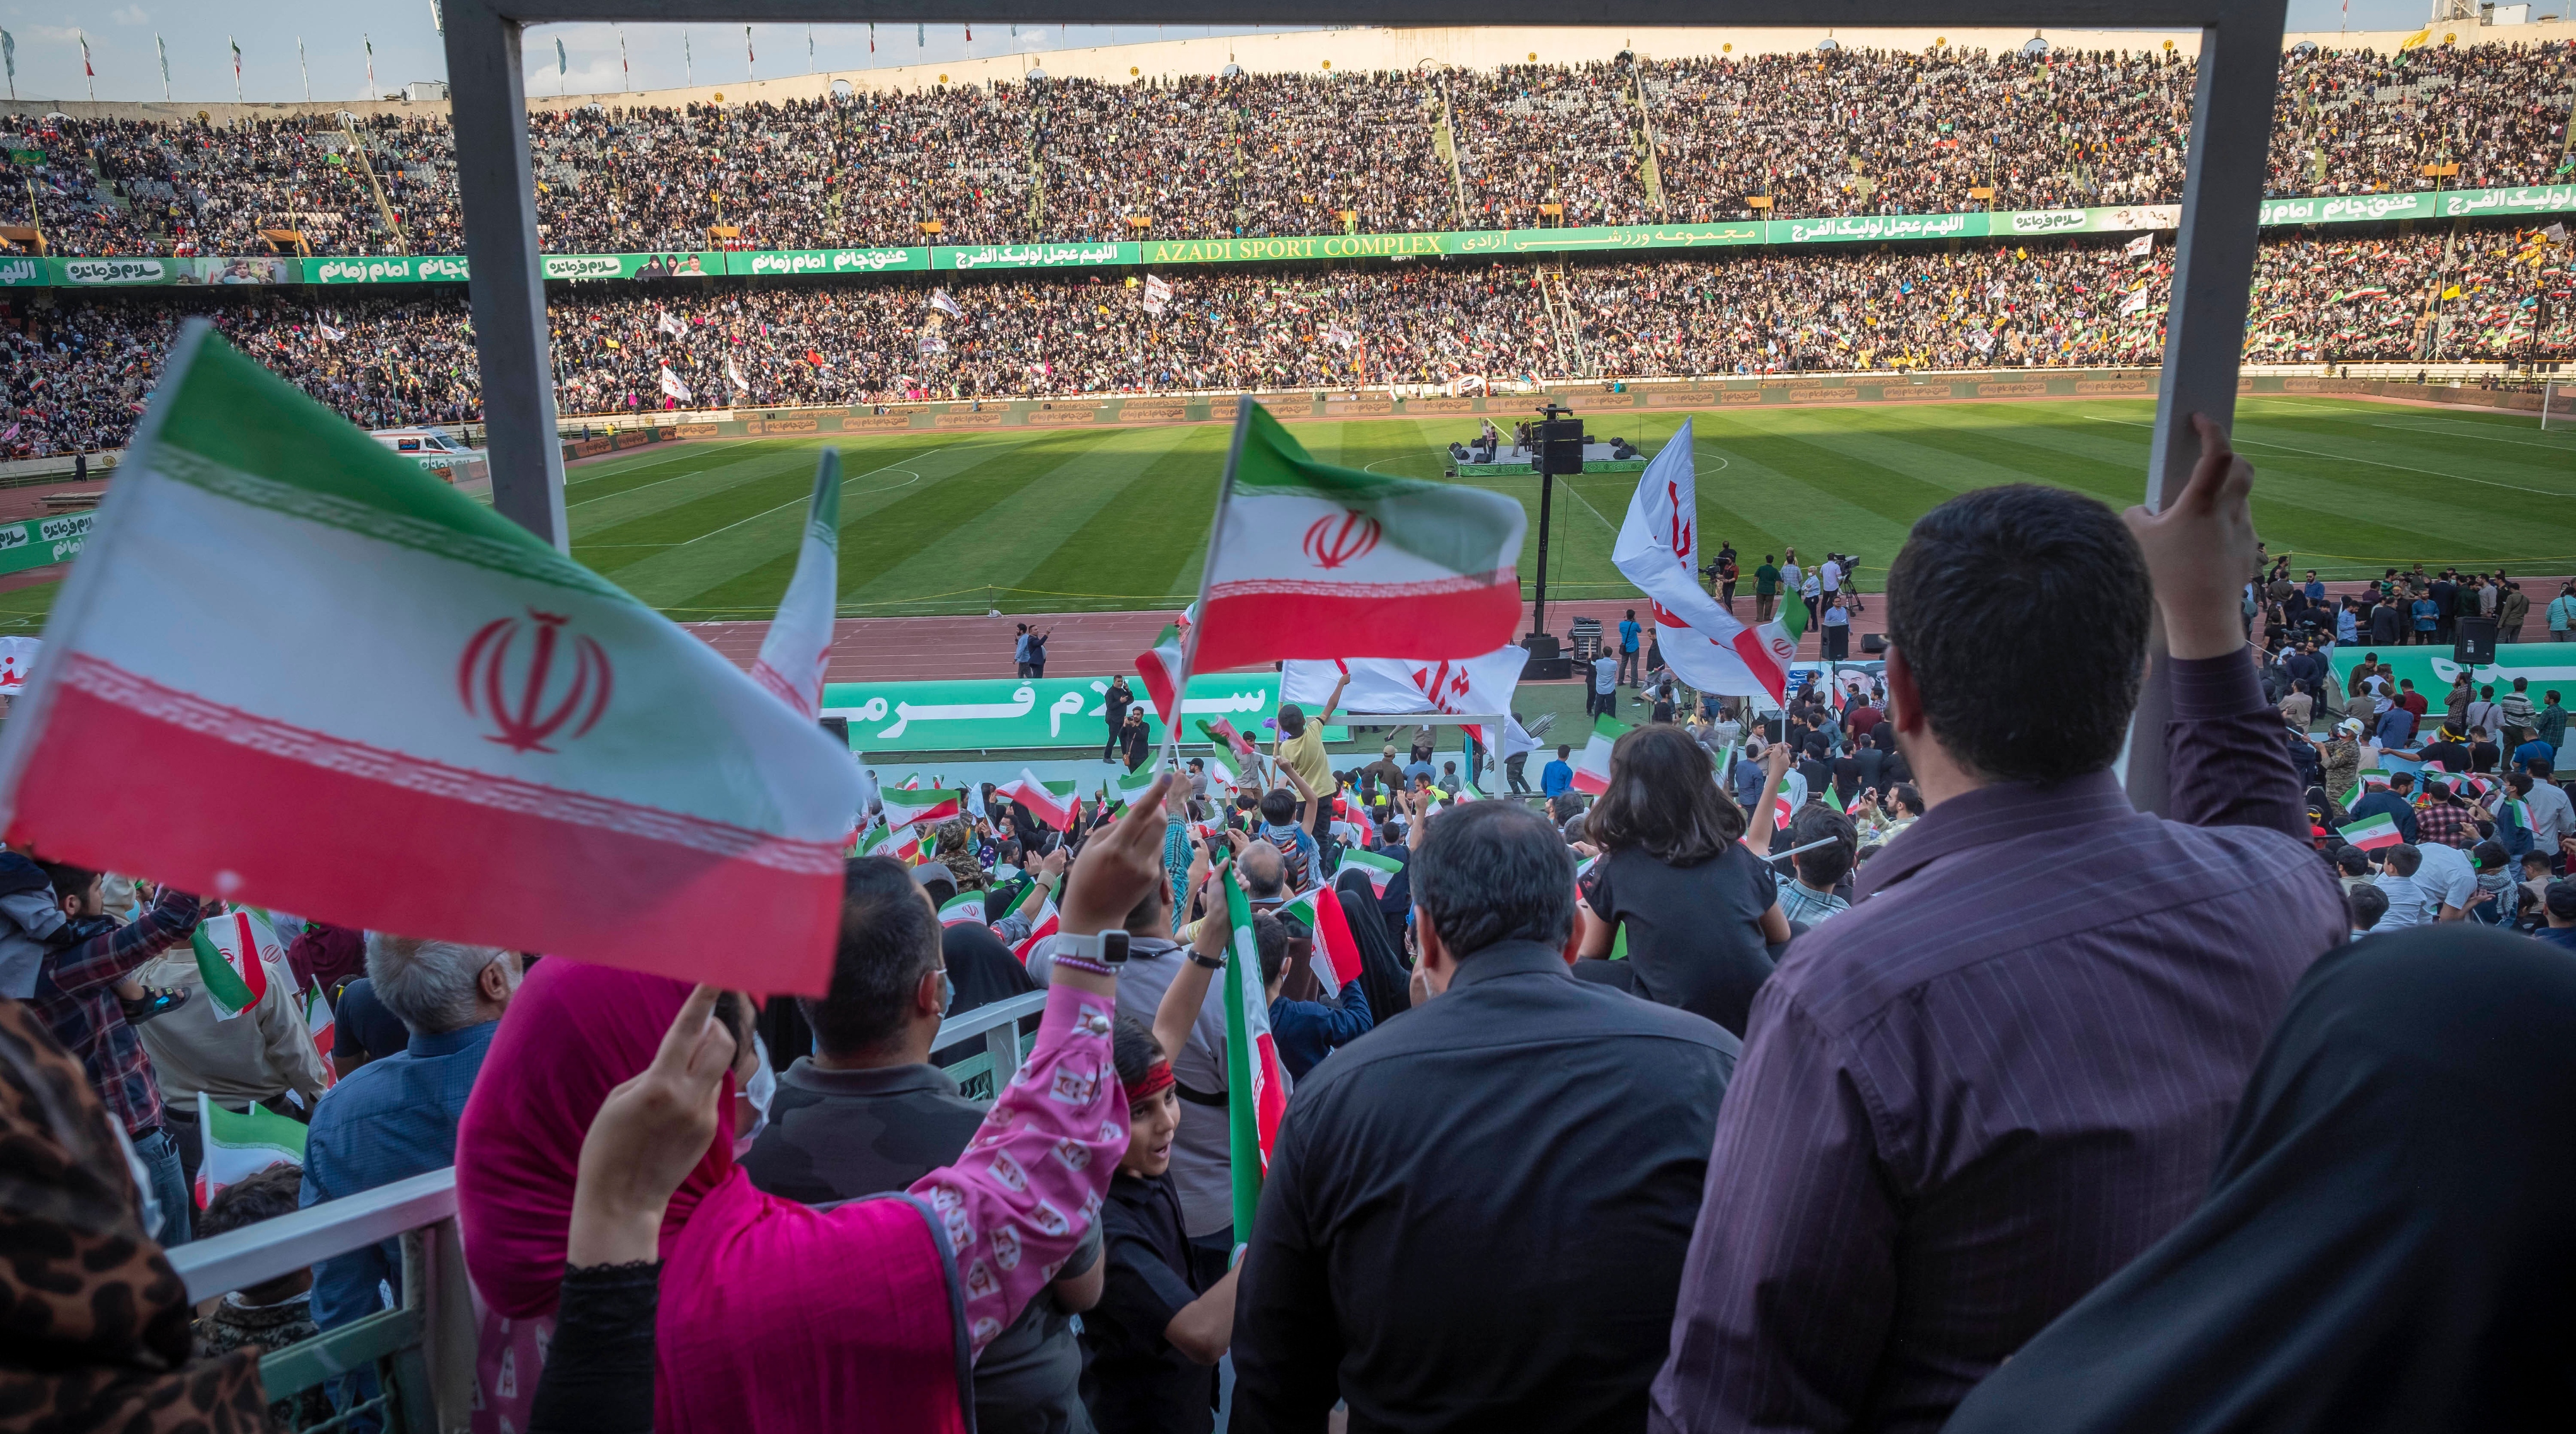 Des manifestants iraniens expulsés d’un match amical de football en Autriche, selon le rapport